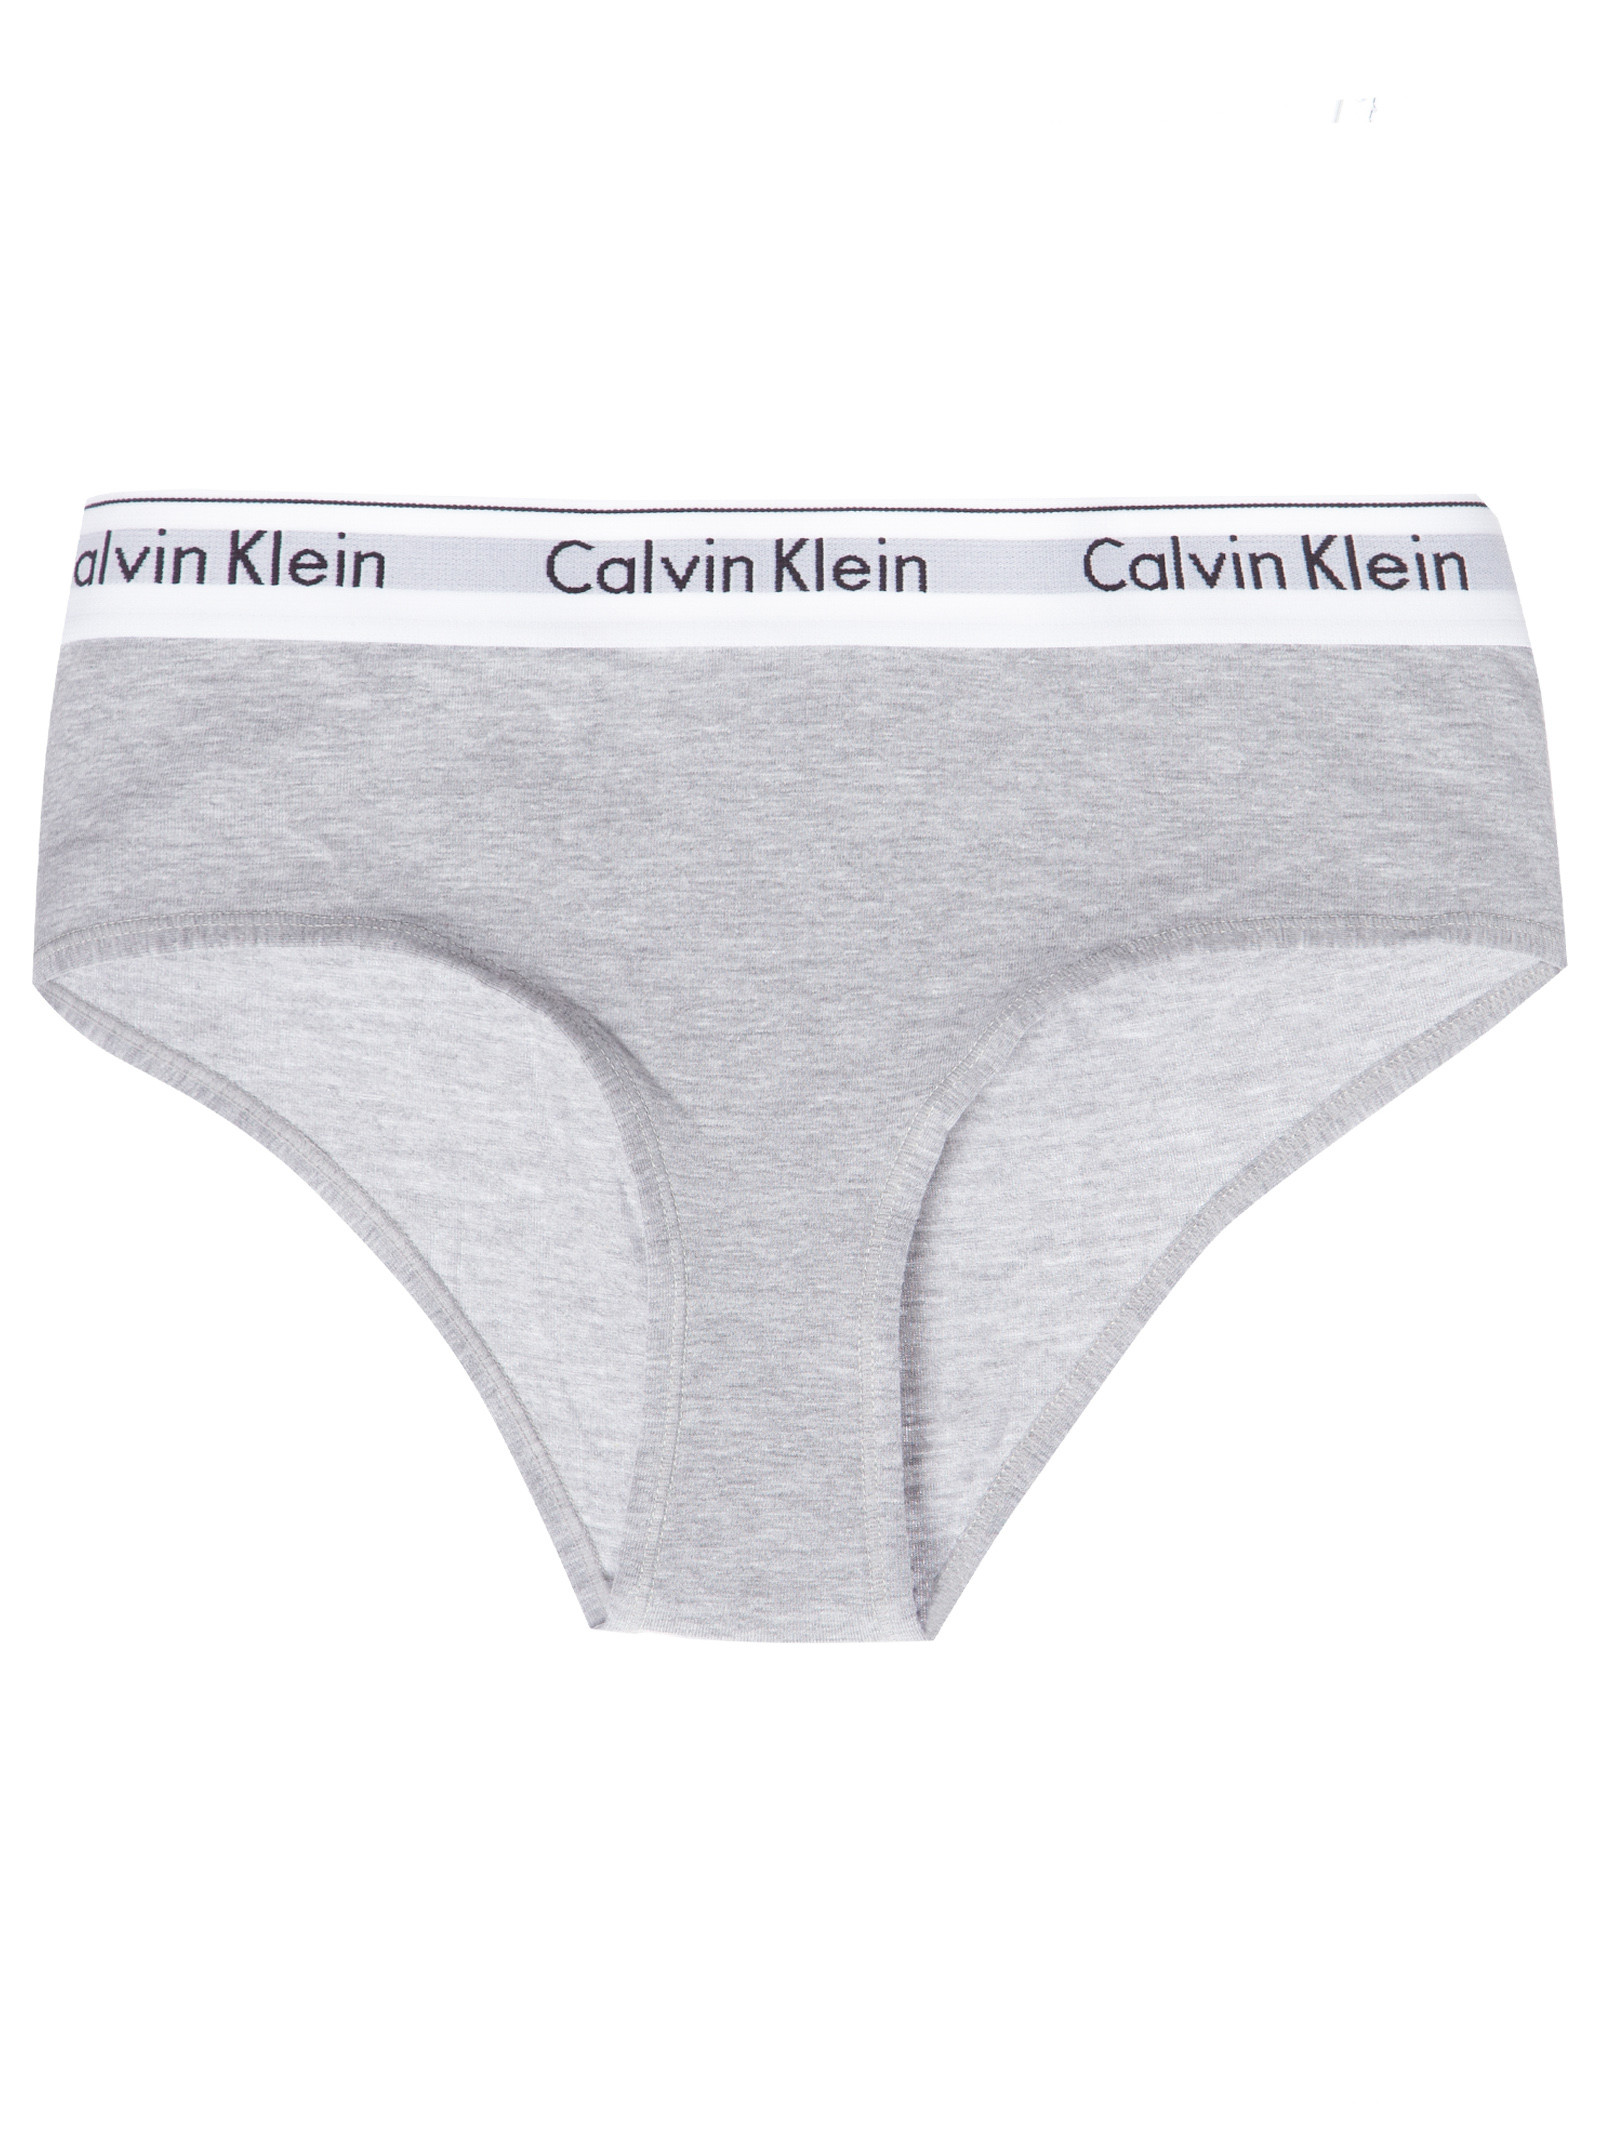 Top de algodão Modern Cotton com cós da Calvin Klein, Soutiens